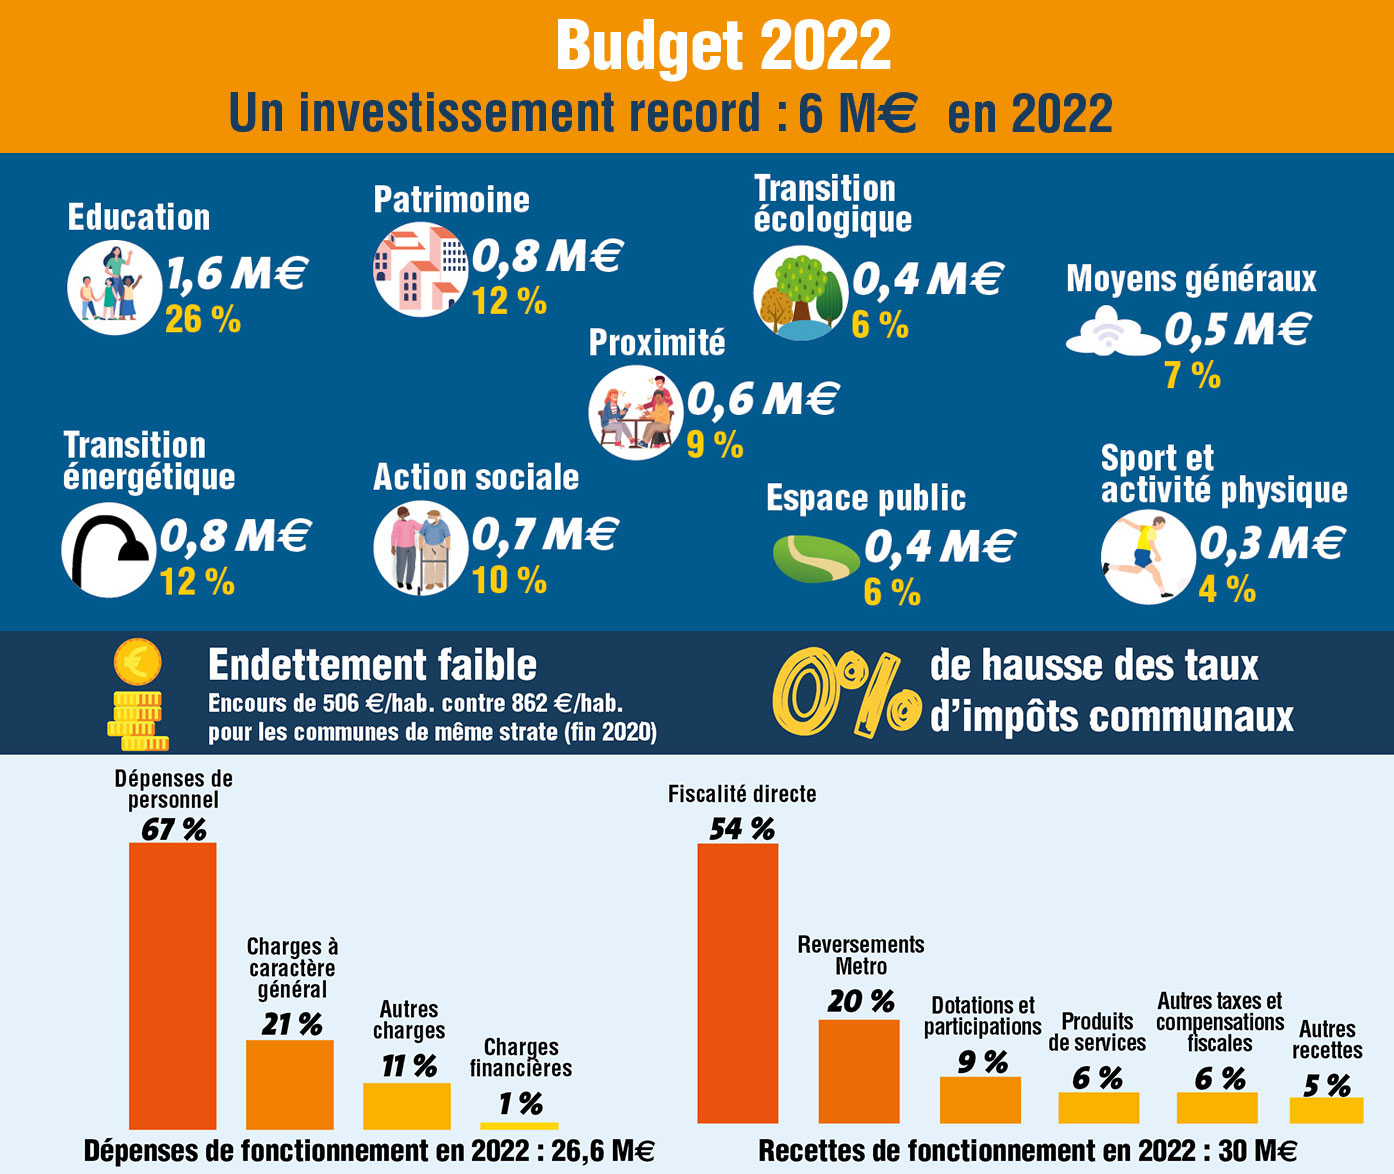 Budget 2022 = investissement record de 6M€ / Education 1,6M€ (26%) / Patrimoine 0.8M€ (12%) / Transition écologique 0.4M€ (6%) / Moyens généraux0.5M€ (7%) / Transition énergétique 0.8 (12%) / Action sociale 0.7M€ (10%) / Espace public 0.4 M€ (6%) / Proximité 0.6M€ (9%) / Sport et activités physiques 0.3M€ (4%)